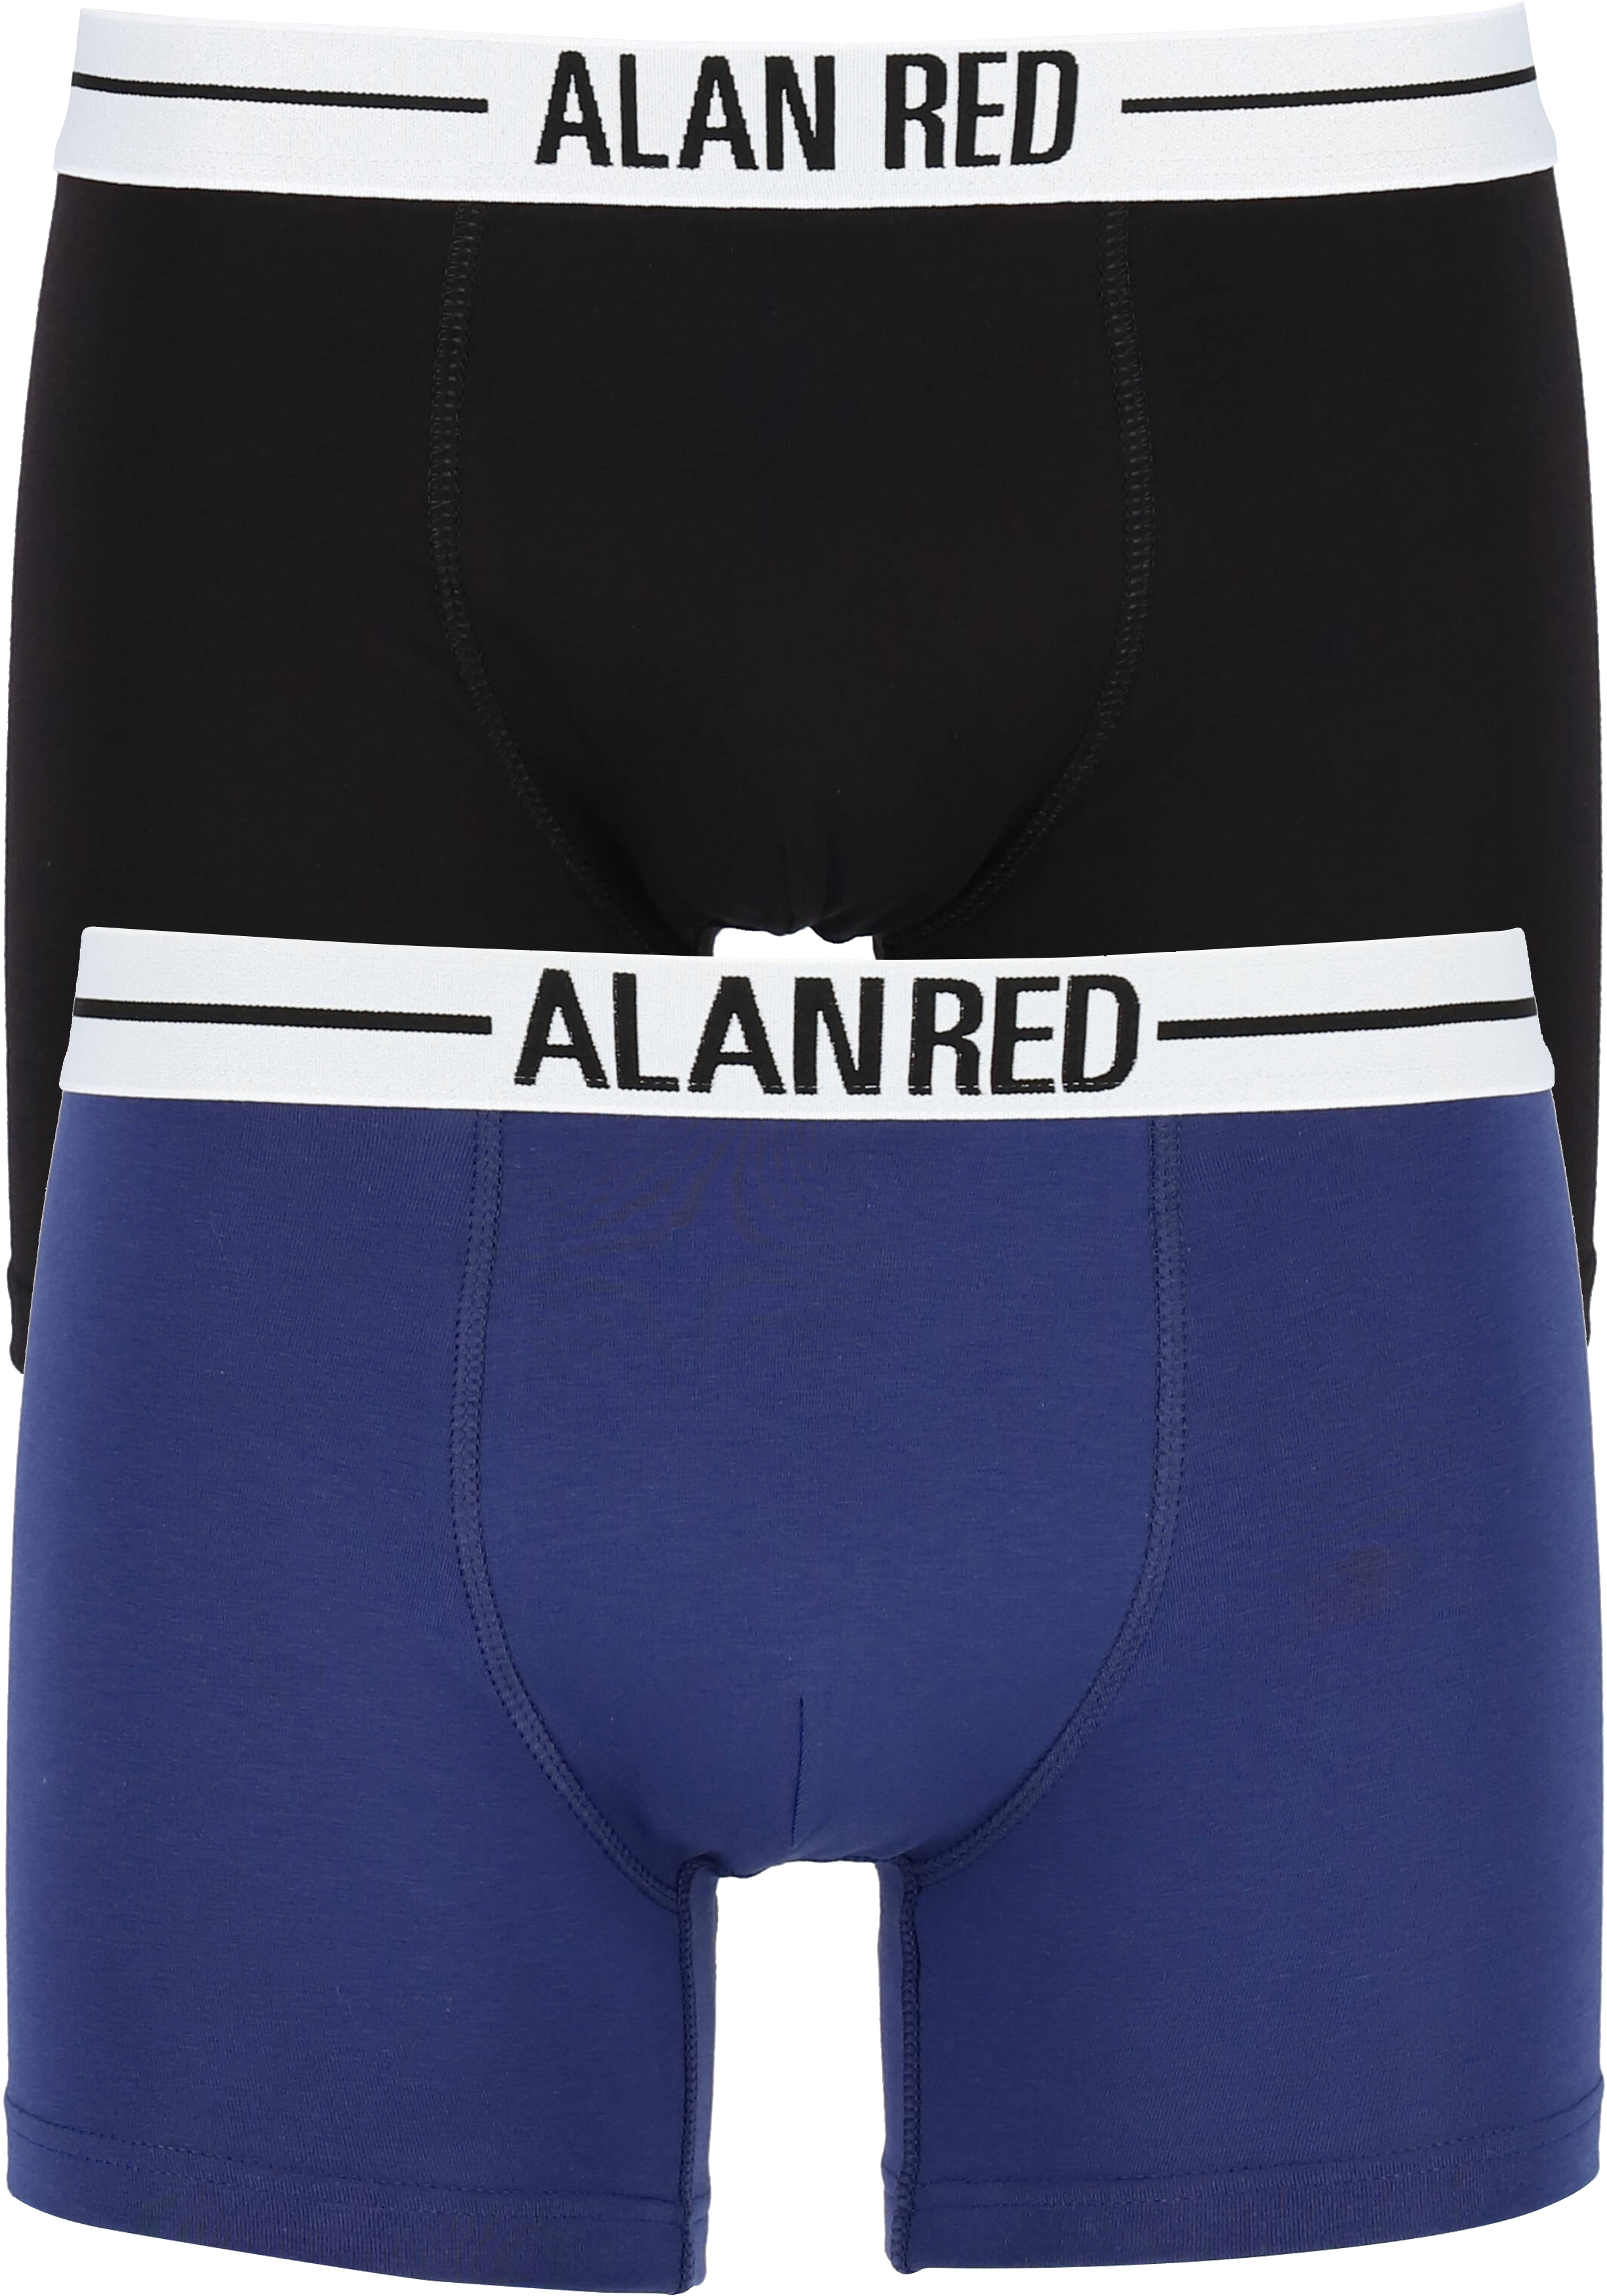 ALAN RED boxershorts (2-pack), zwart / blauw